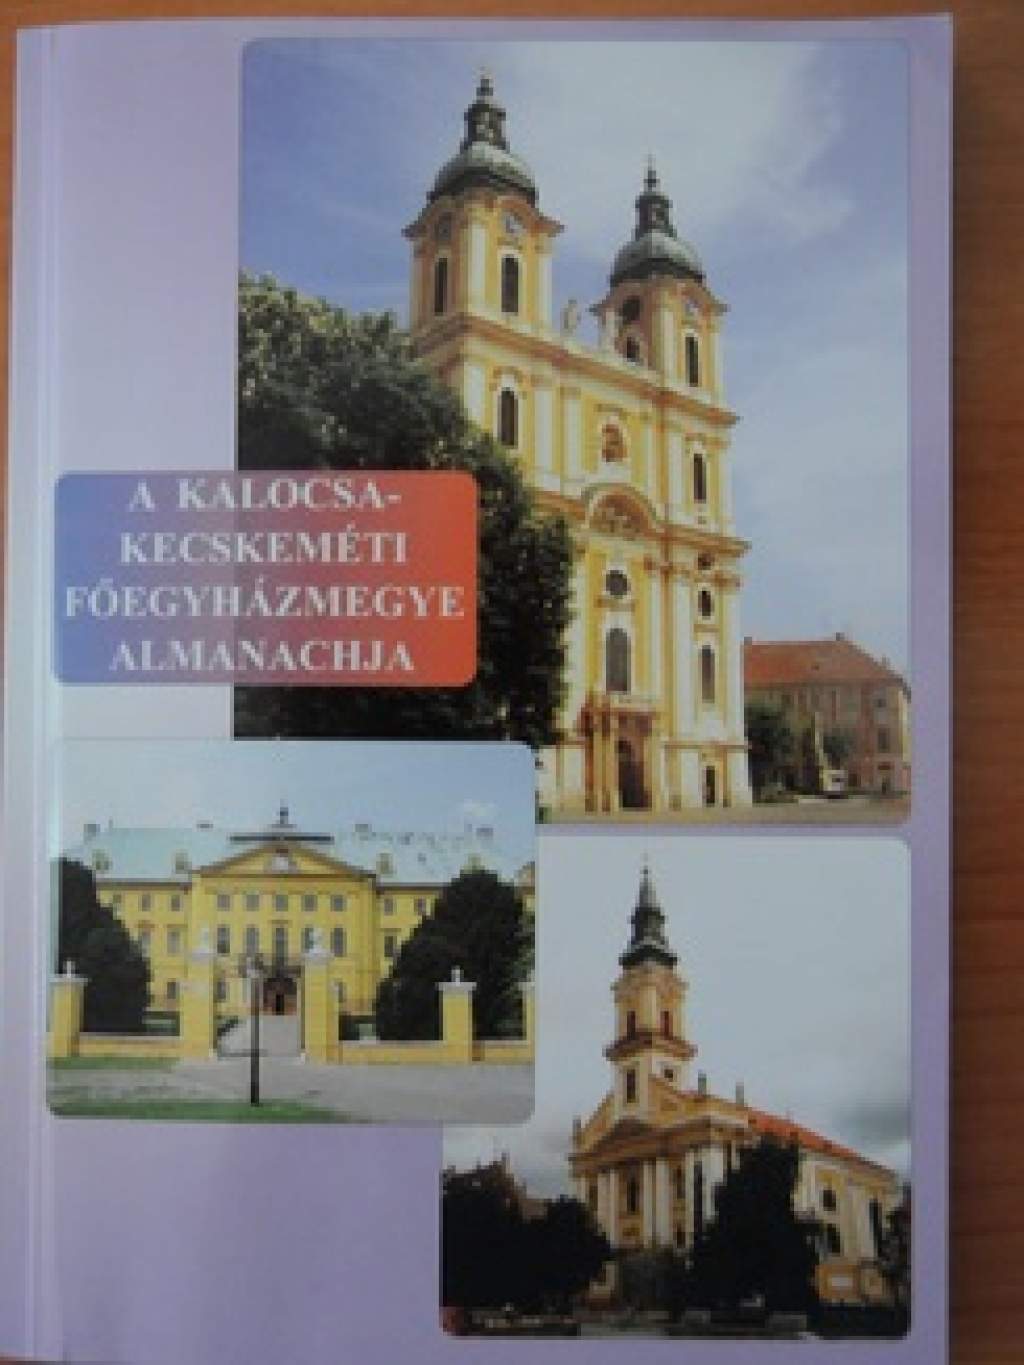 PORTA KÖNYVTÁR: a Kalocsa-Kecskeméti Főegyházmegye Almanachja 